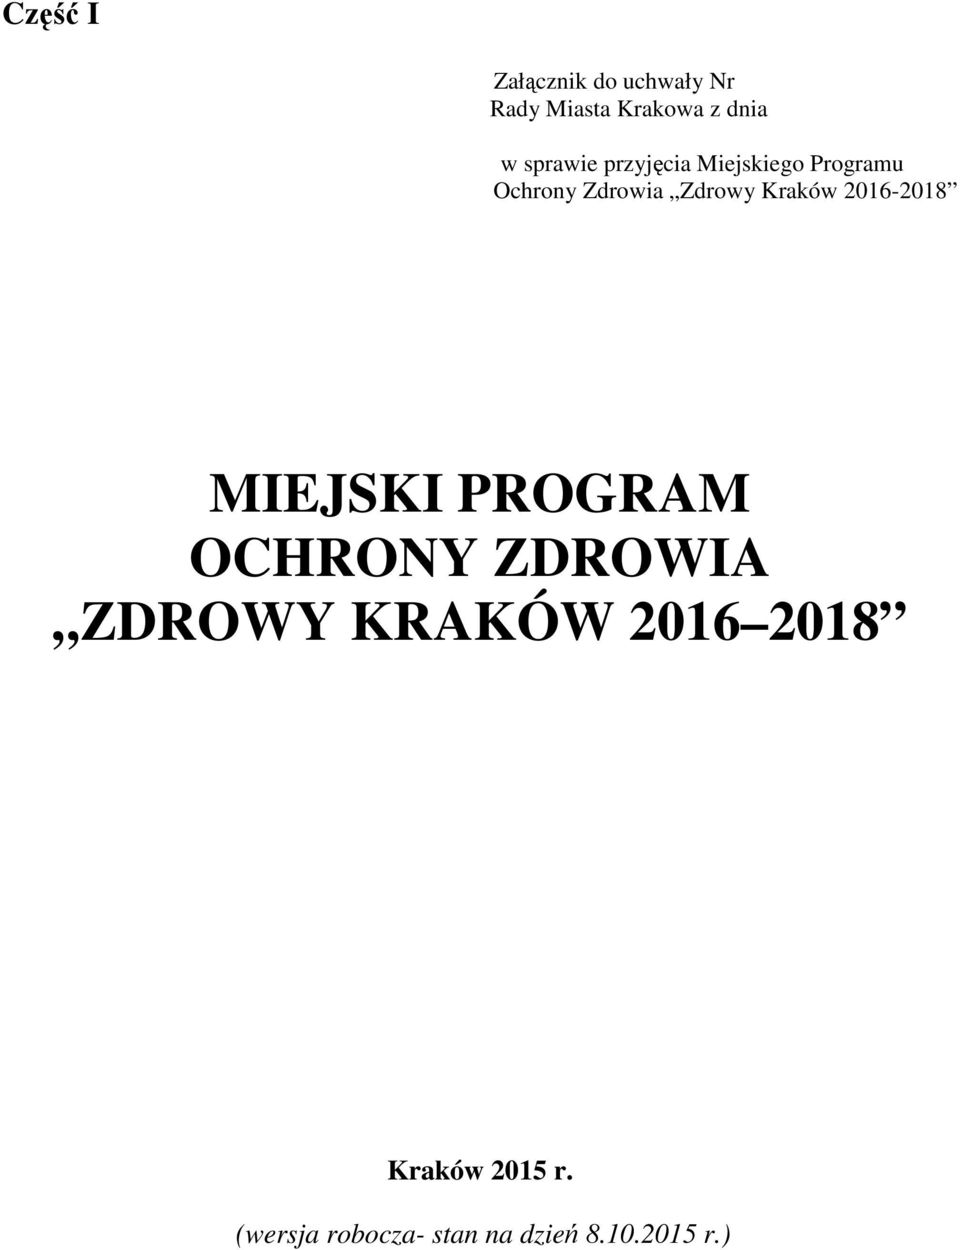 Kraków 2016-2018 MIEJSKI PROGRAM OCHRONY ZDROWIA ZDROWY KRAKÓW